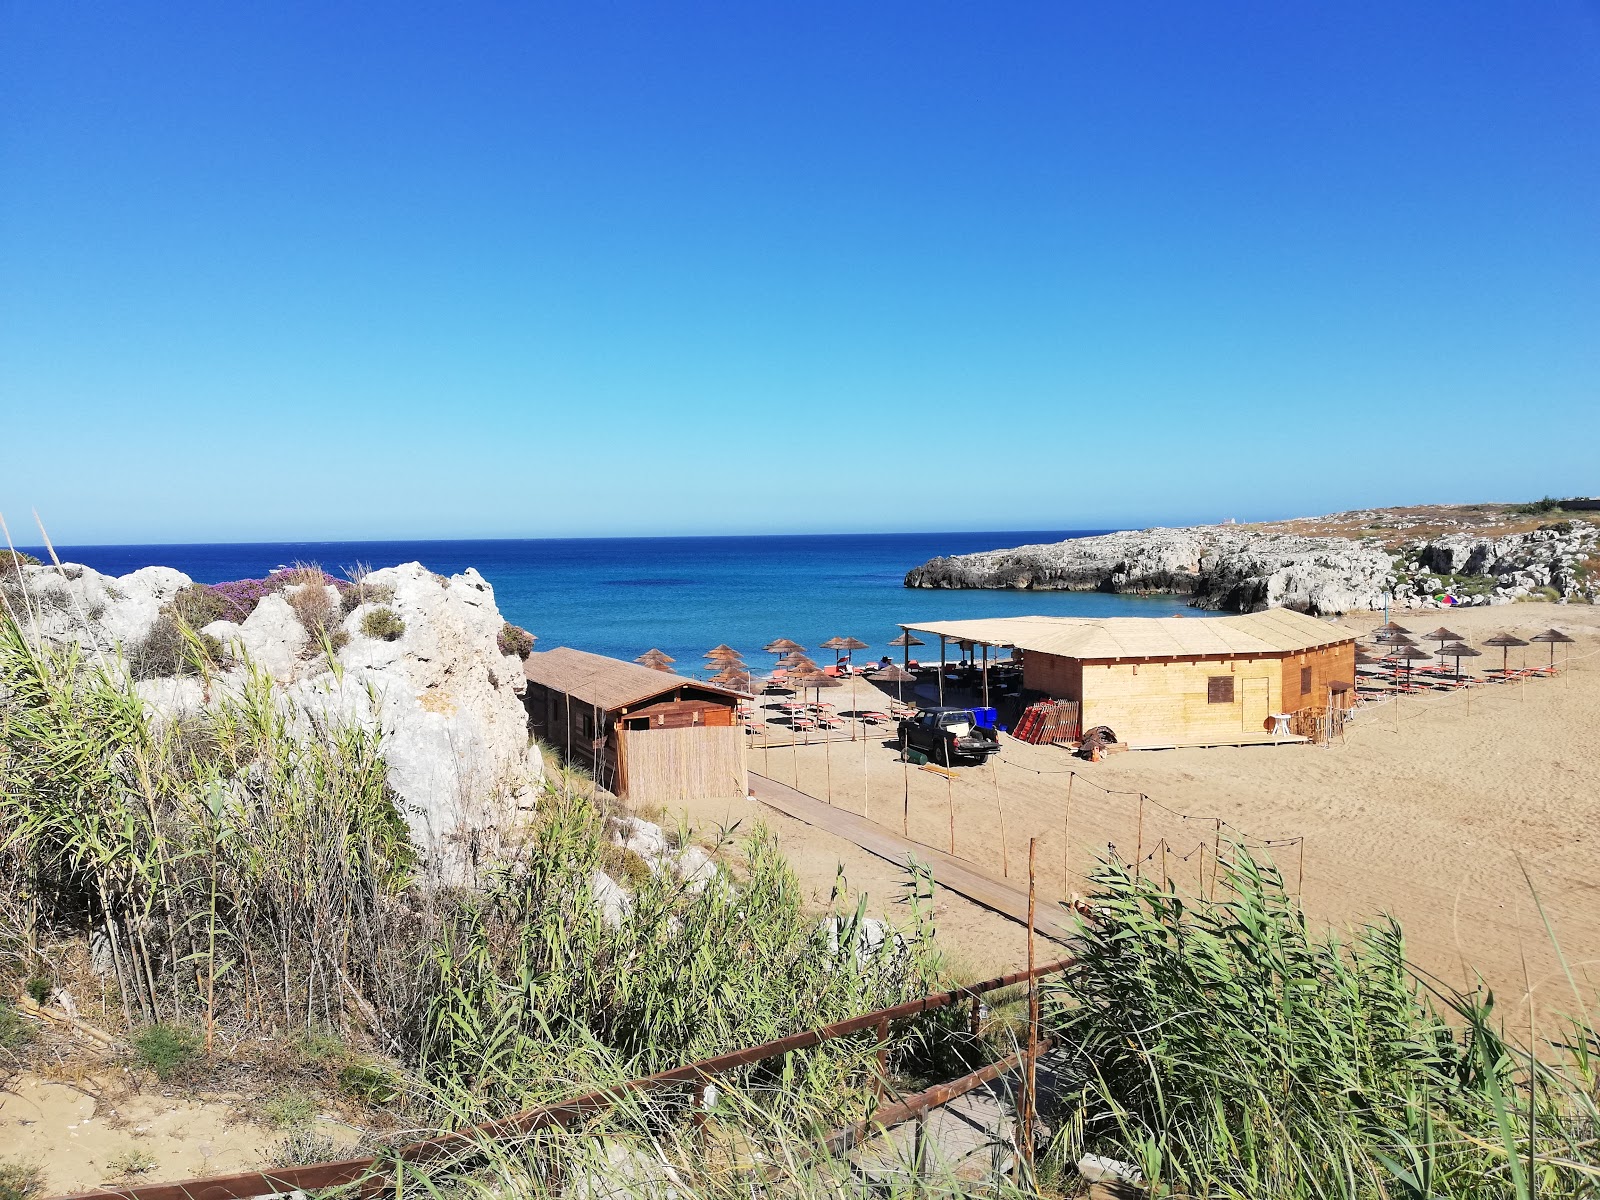 Foto von Spiaggia Cavettone mit kleine bucht